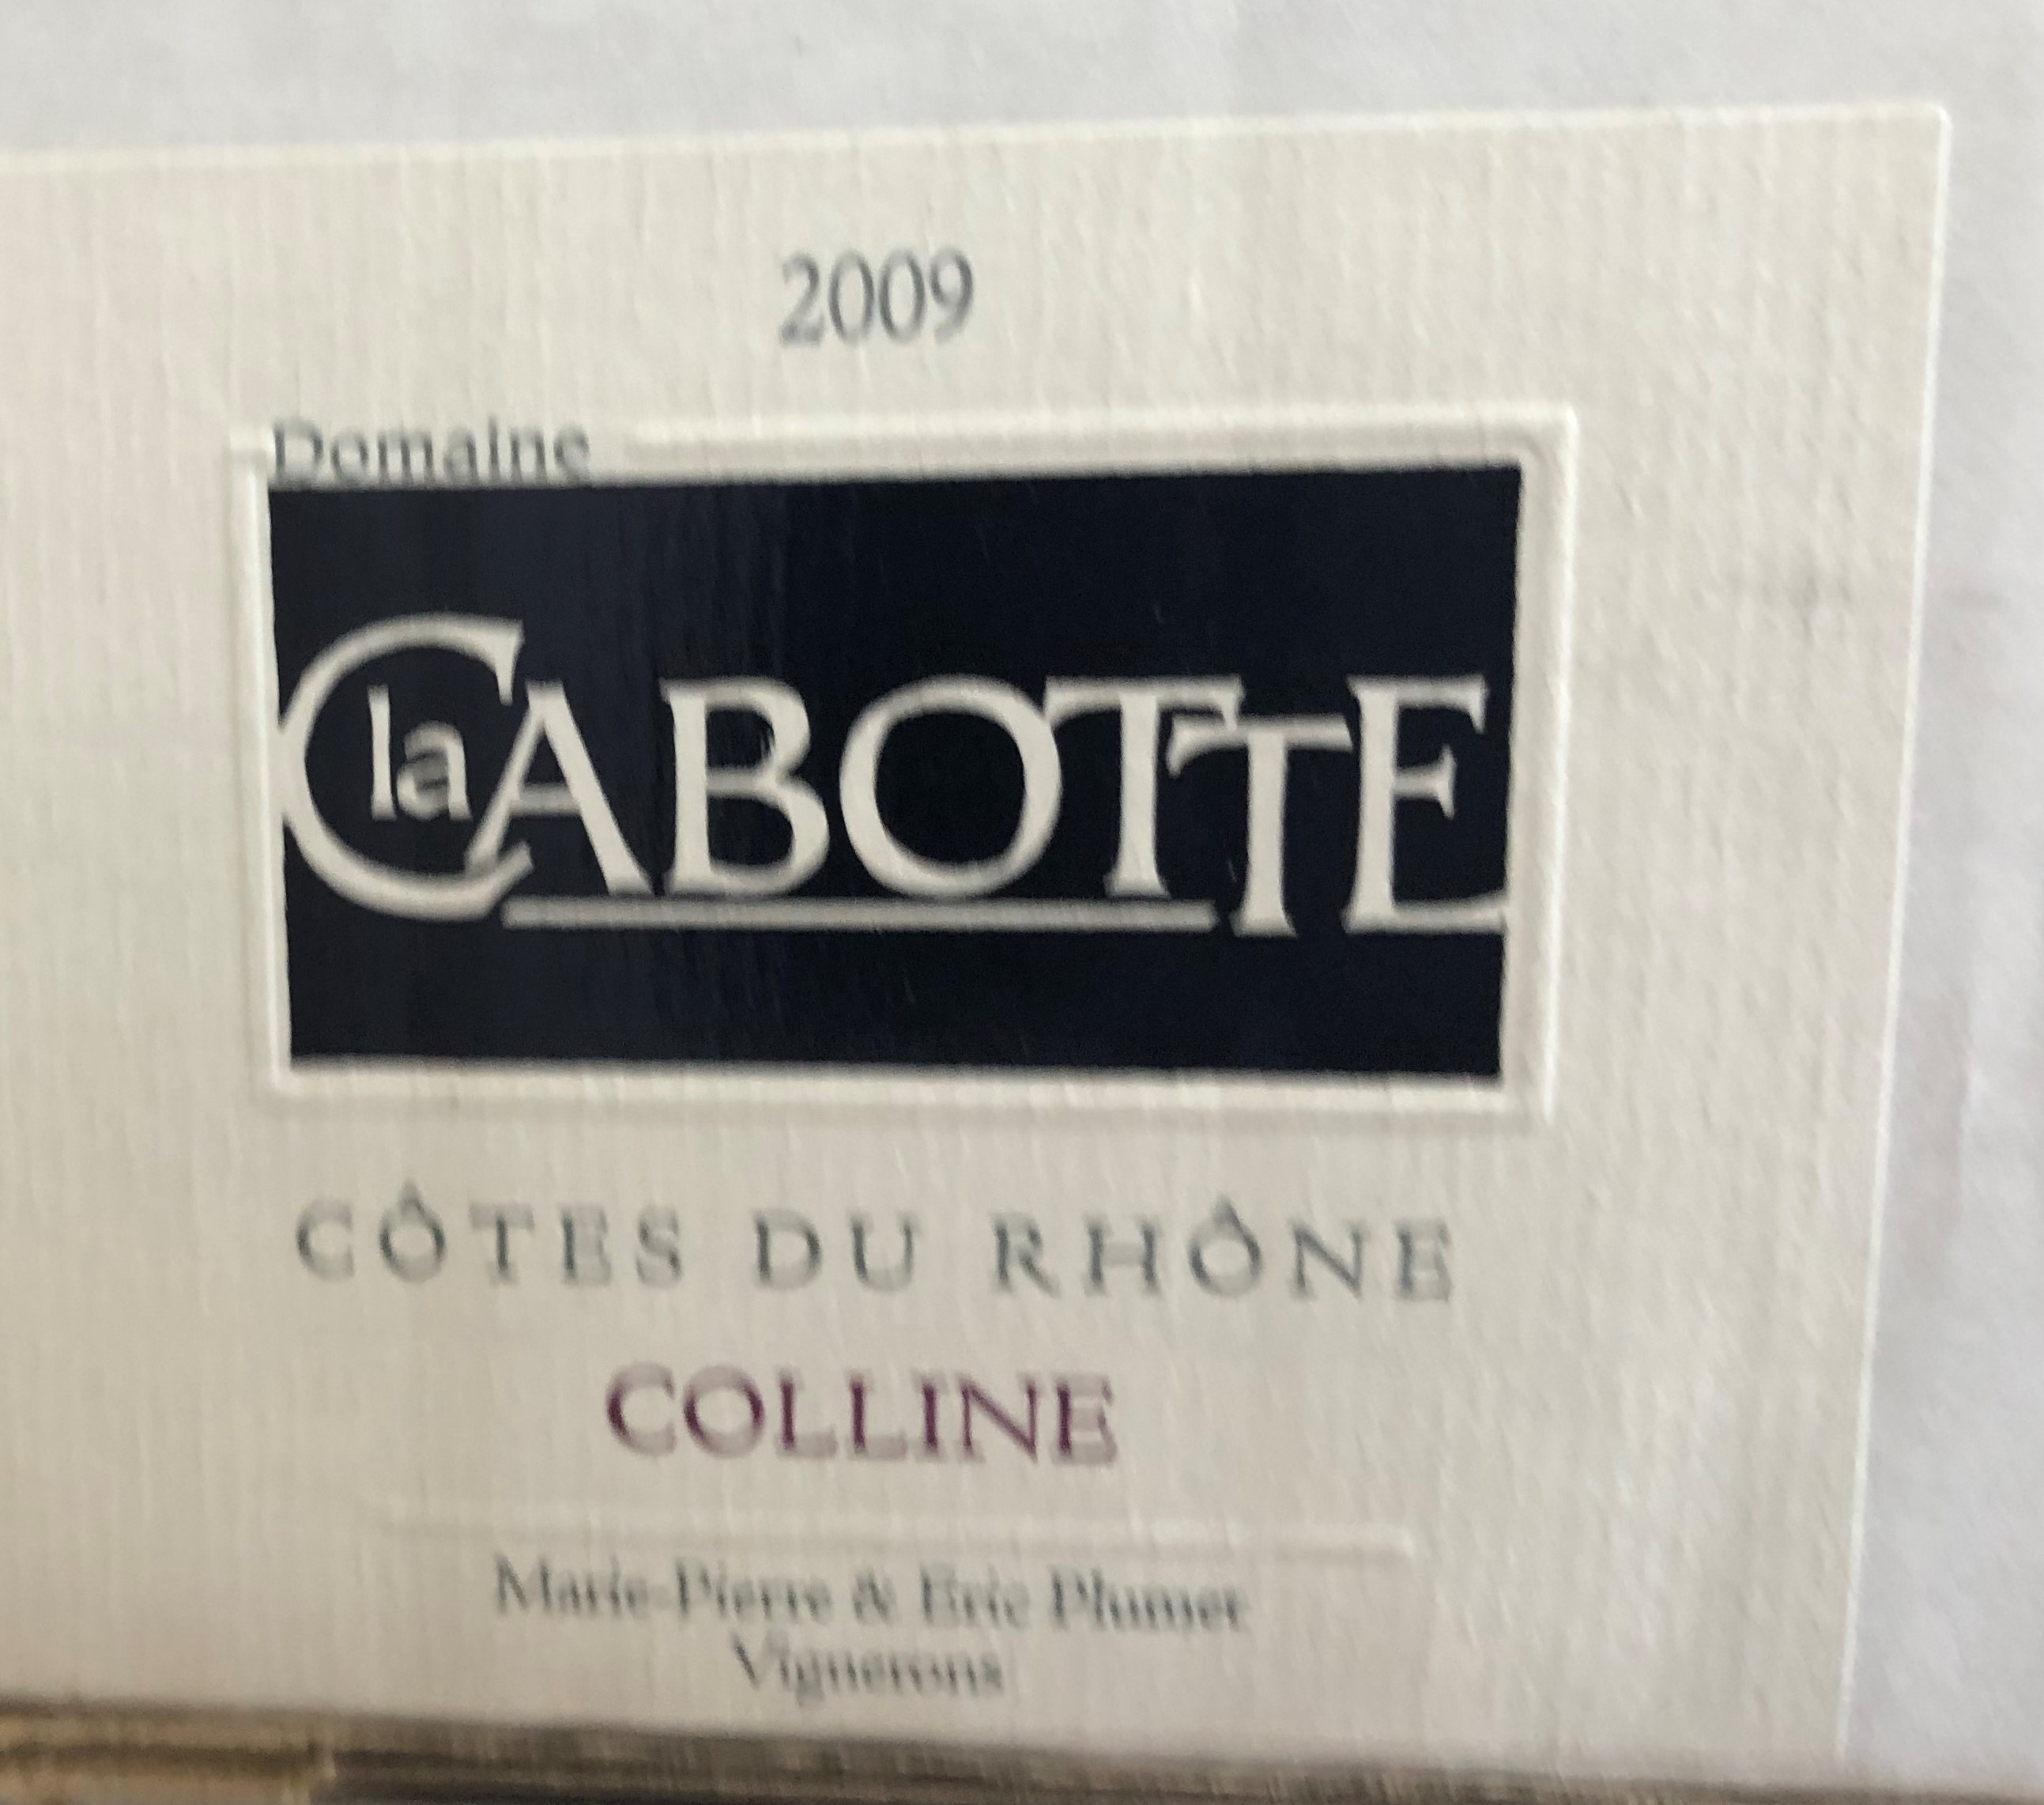 2009 Cotes du Rhone Colline, Cabotte, Rhone, France, 12 bottles